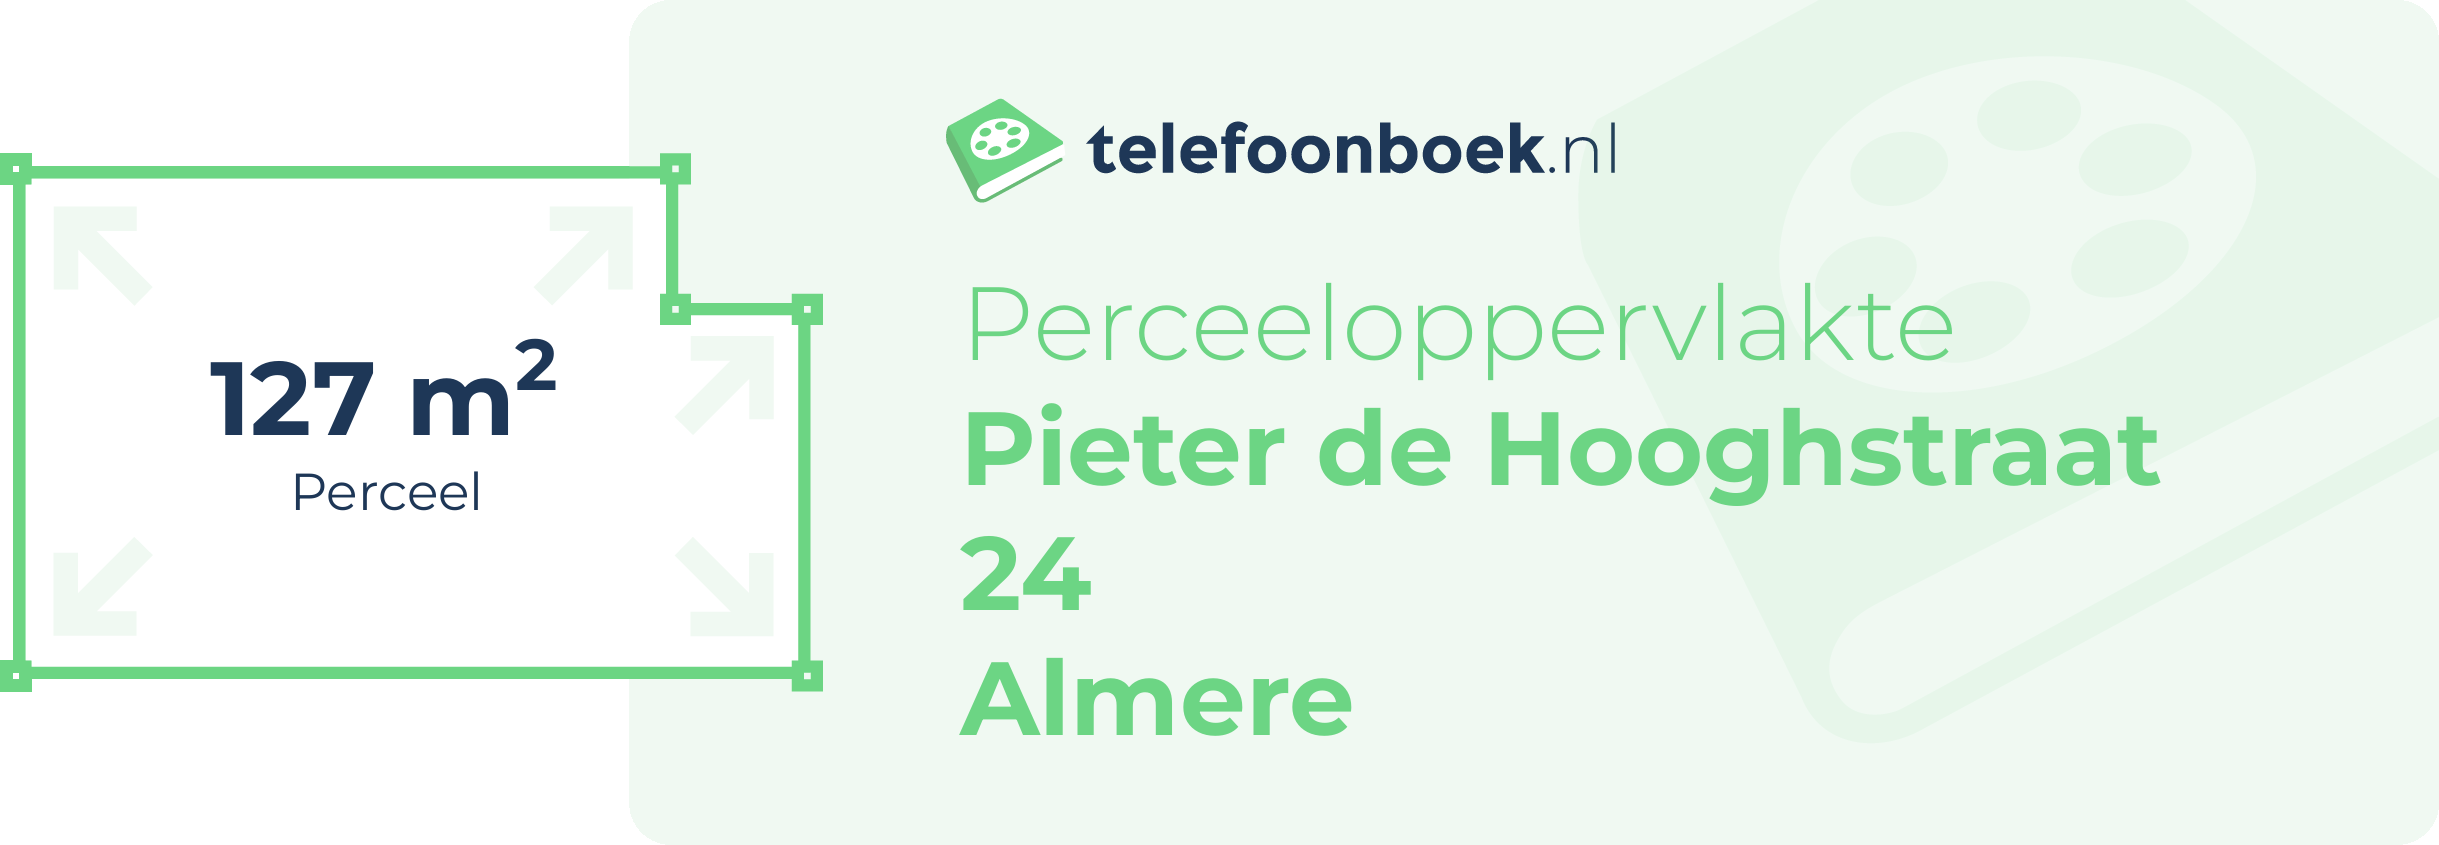 Perceeloppervlakte Pieter De Hooghstraat 24 Almere